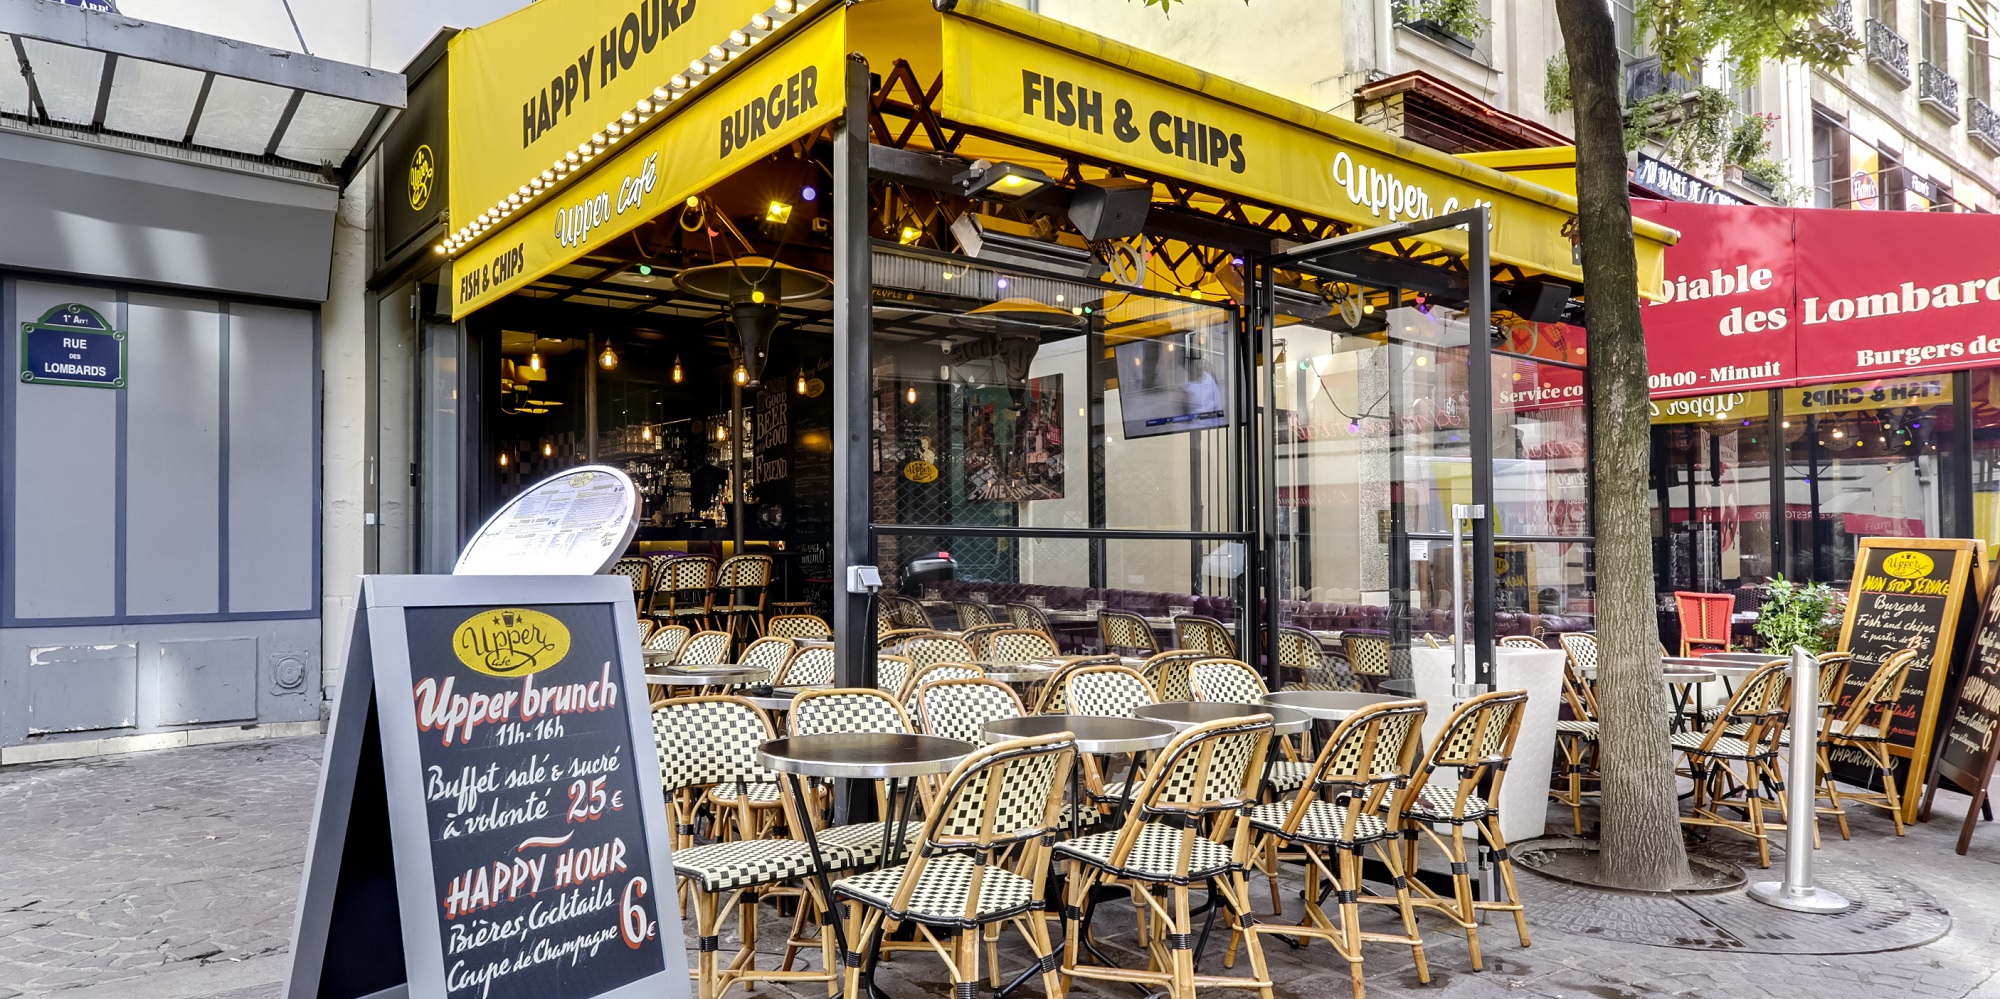 Brunch Upper Café- Les Halles (75001 Paris) - OuBruncher